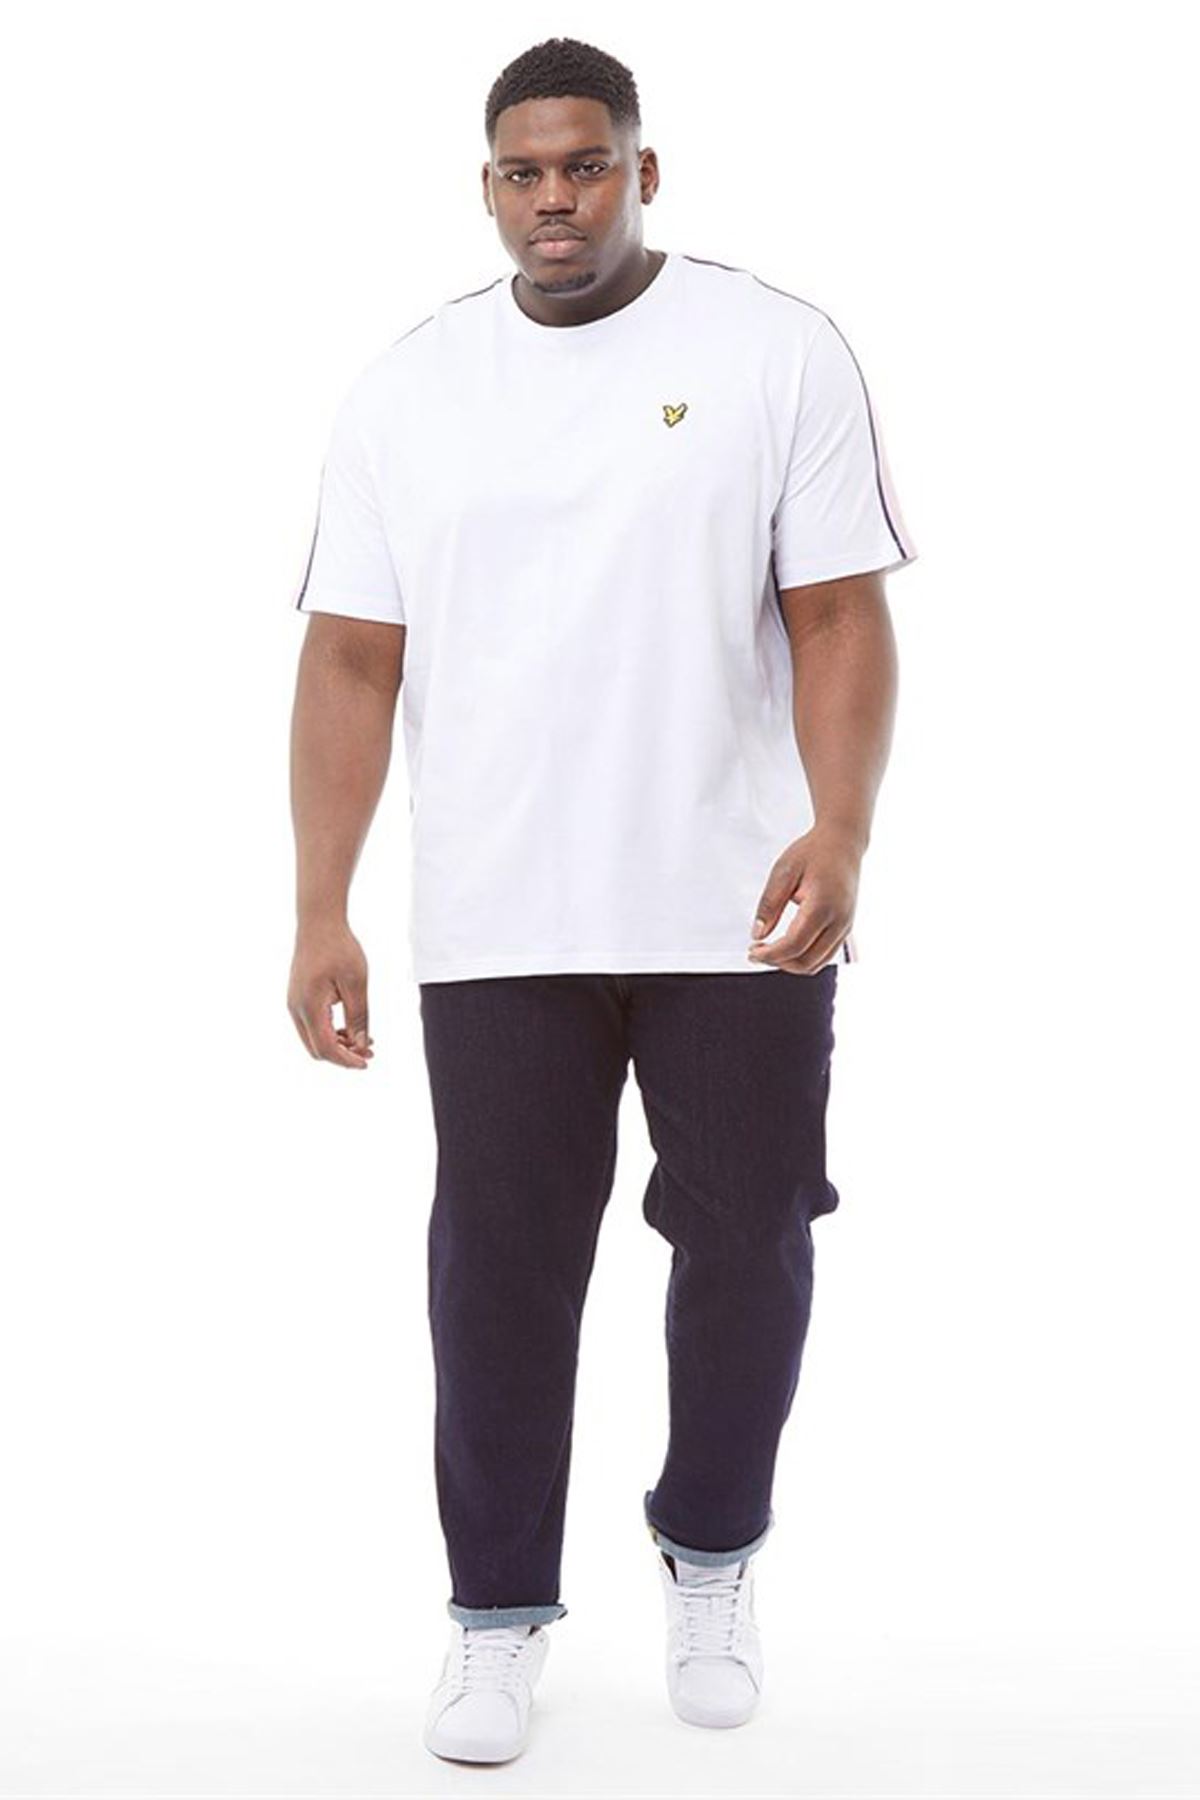 Enesil Beyaz Büyük Beden Yanı Renkli Şeritli Erkek Tişört 